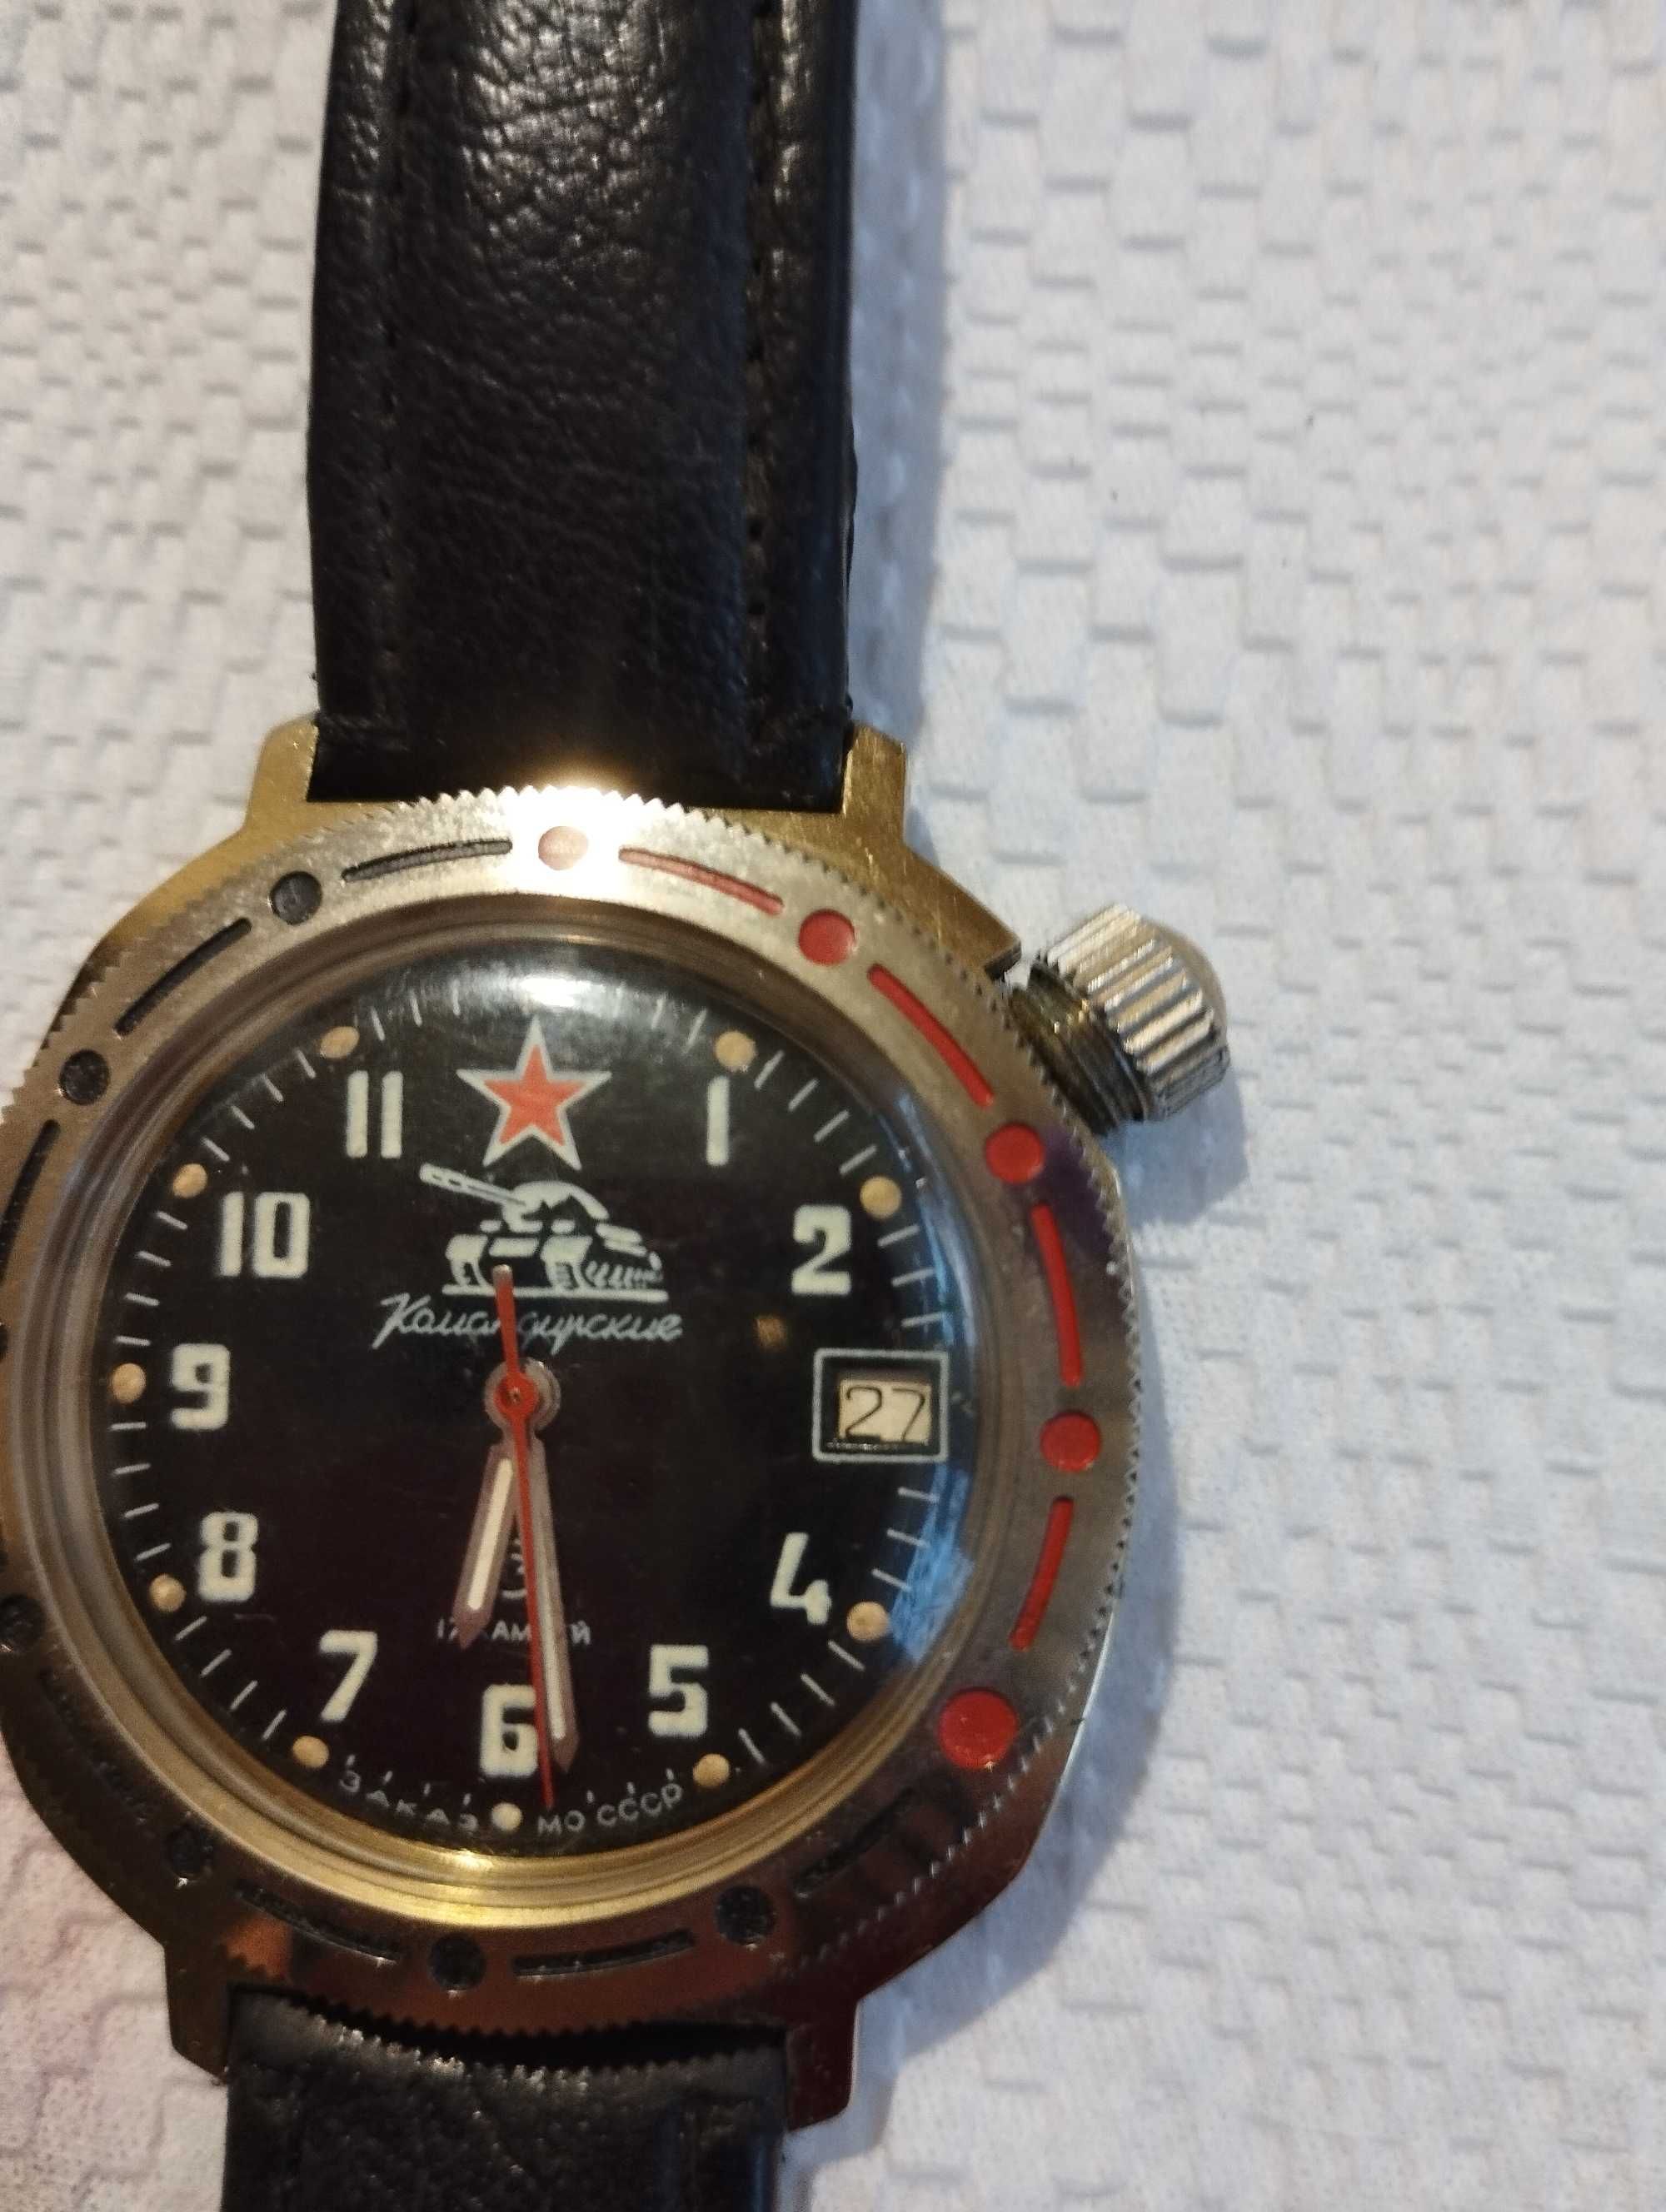 Срочно продам раритетные часы "Командирские", район Саяхата.